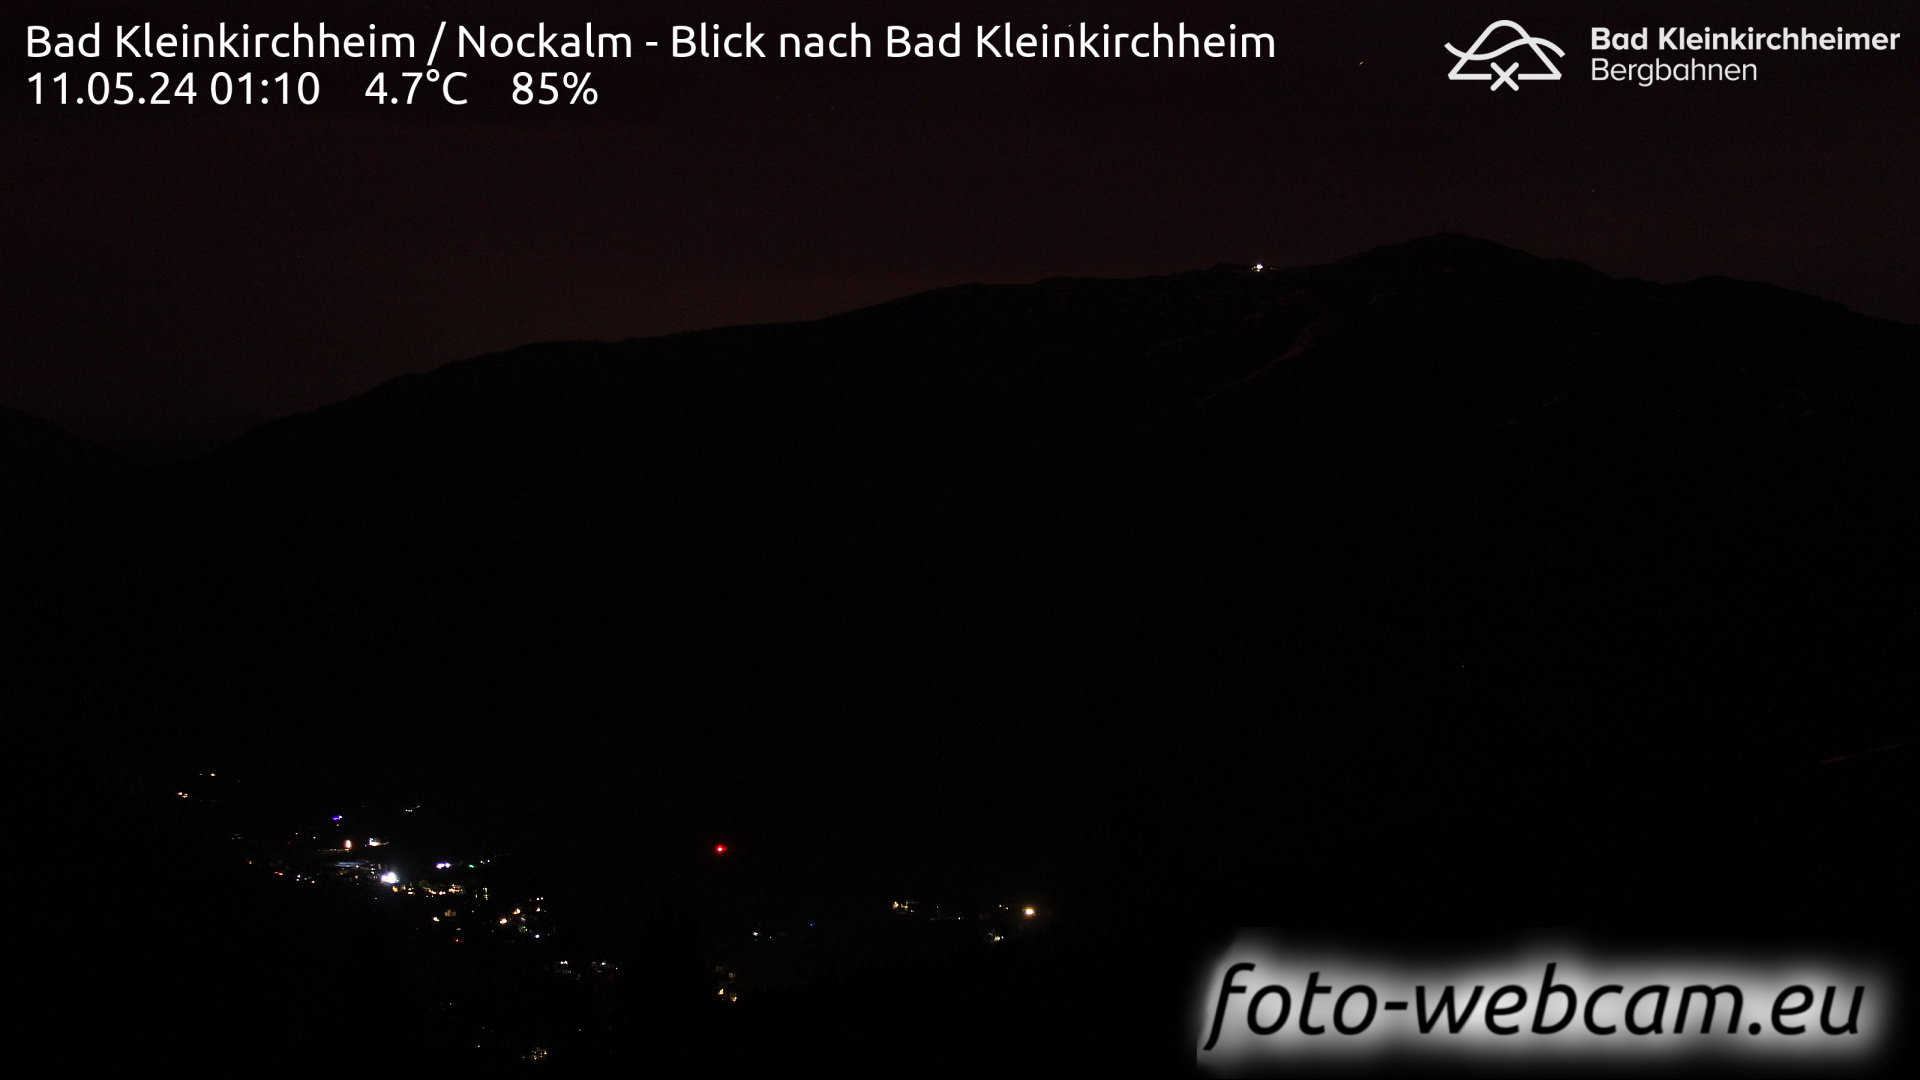 Bad Kleinkirchheim Fr. 01:17